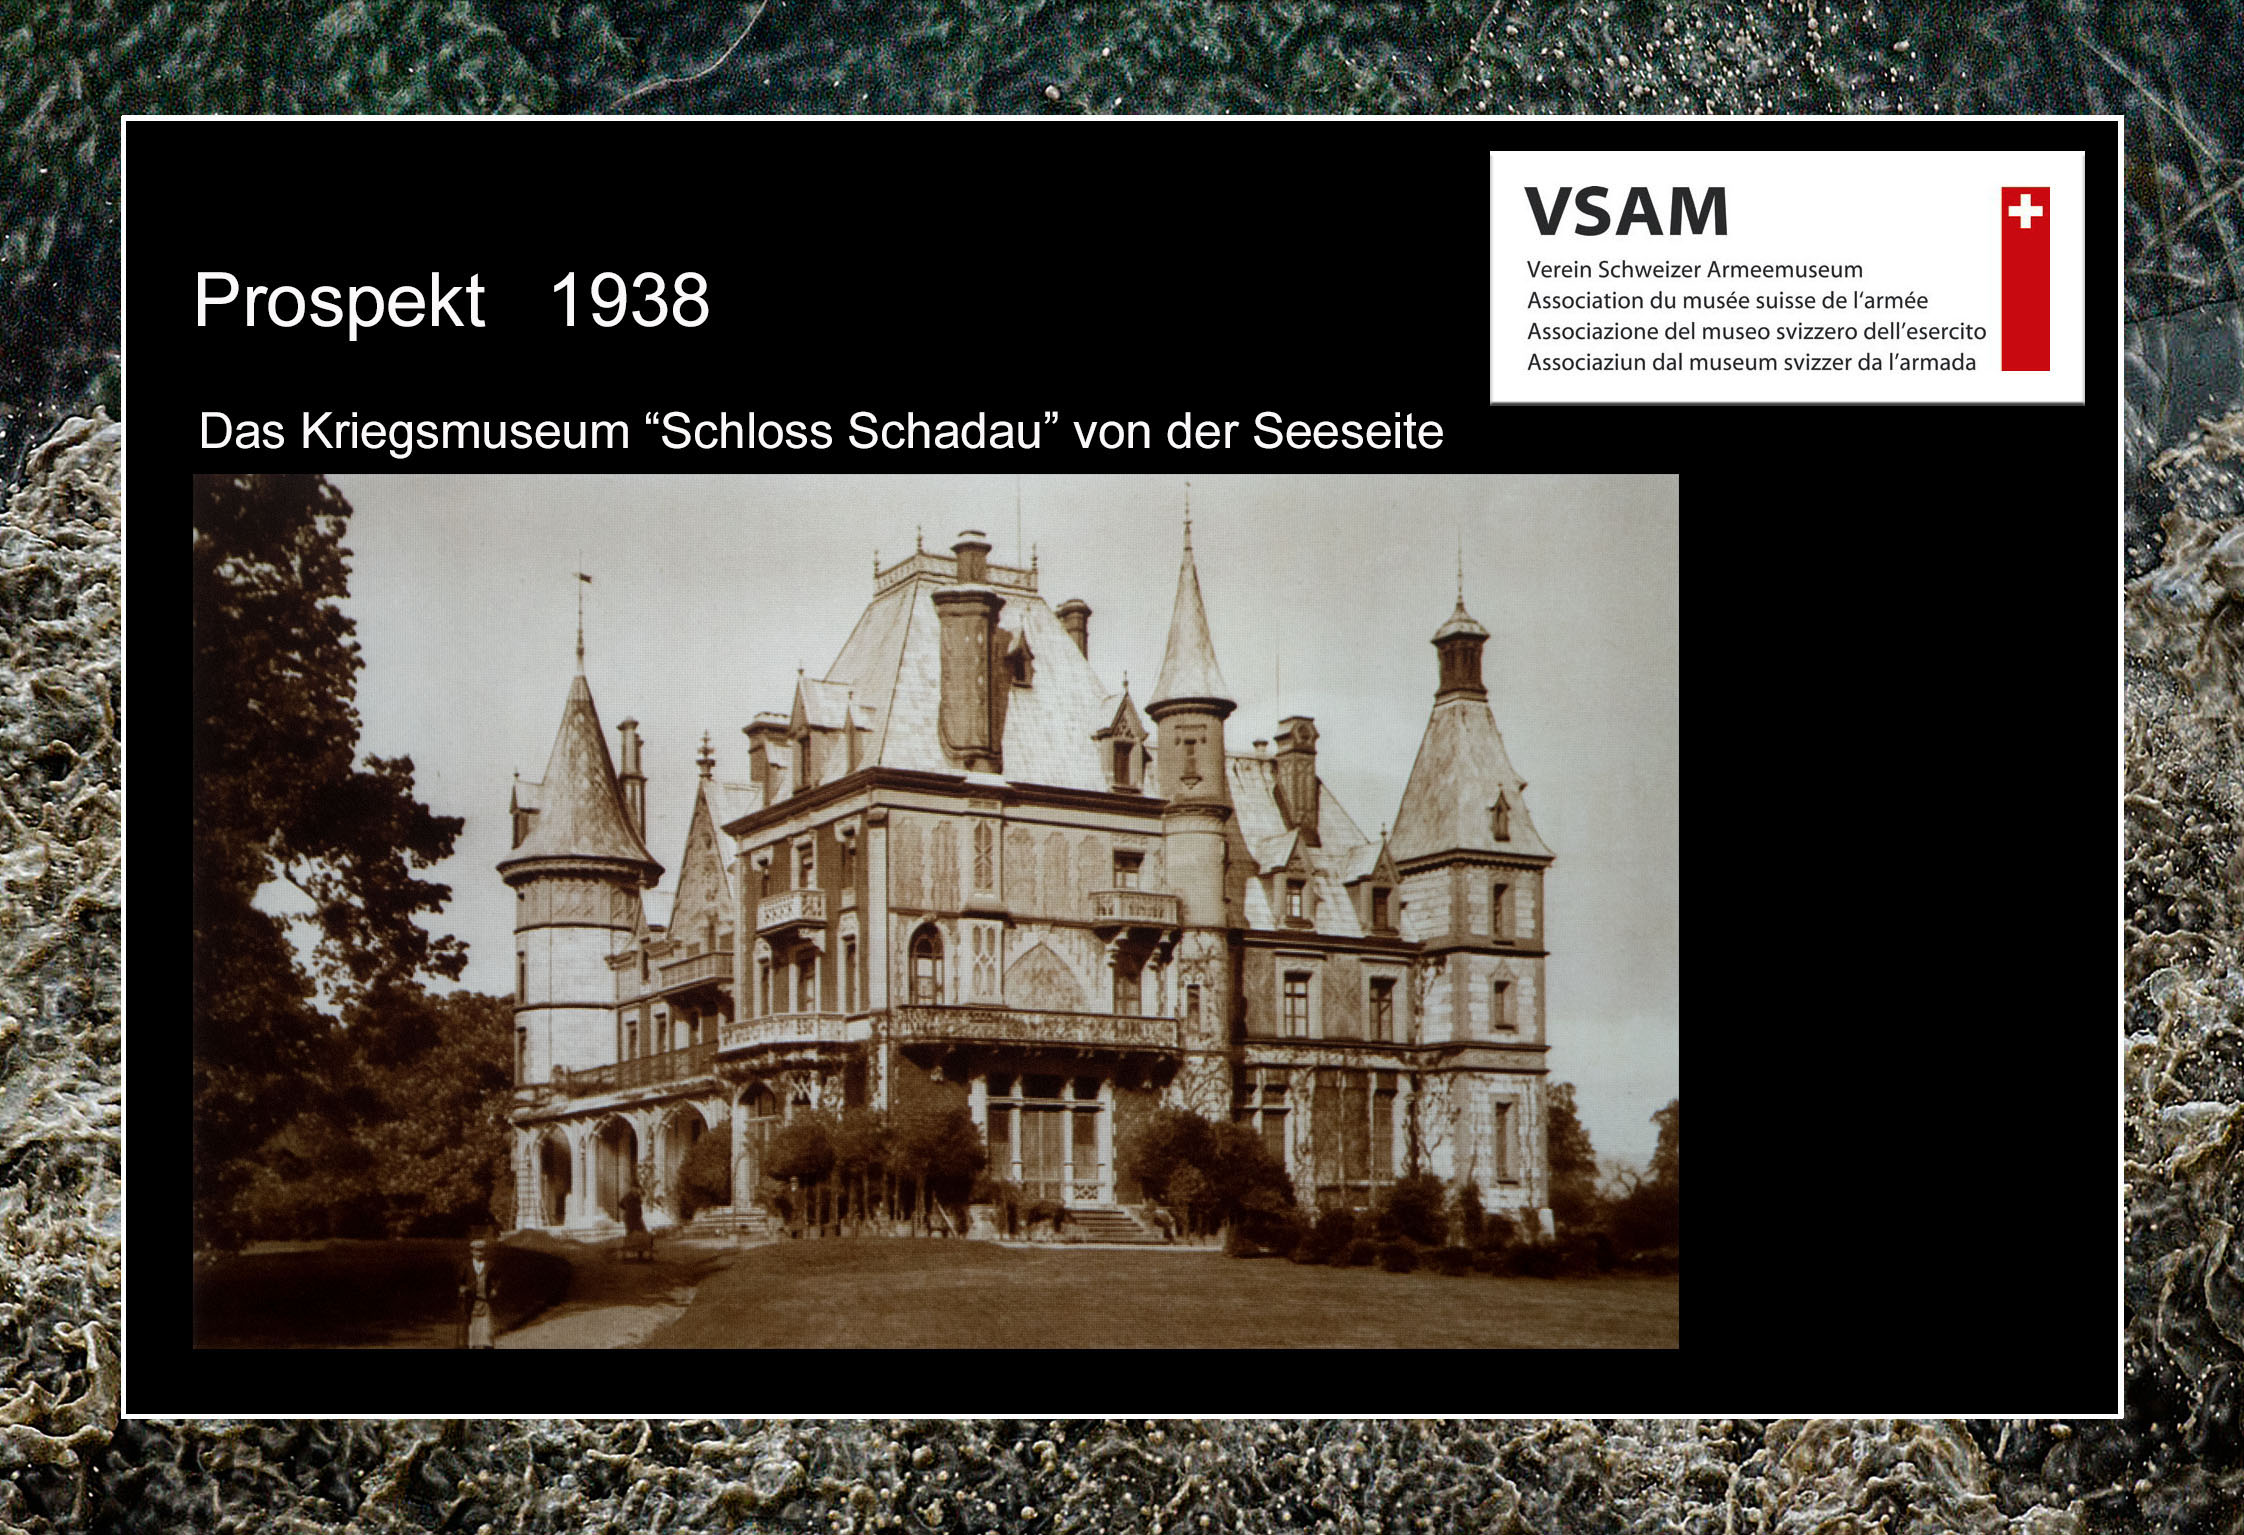 VSAM Vortrag 23.05.2018 Geschichte des Schlosses Schadau in Thun